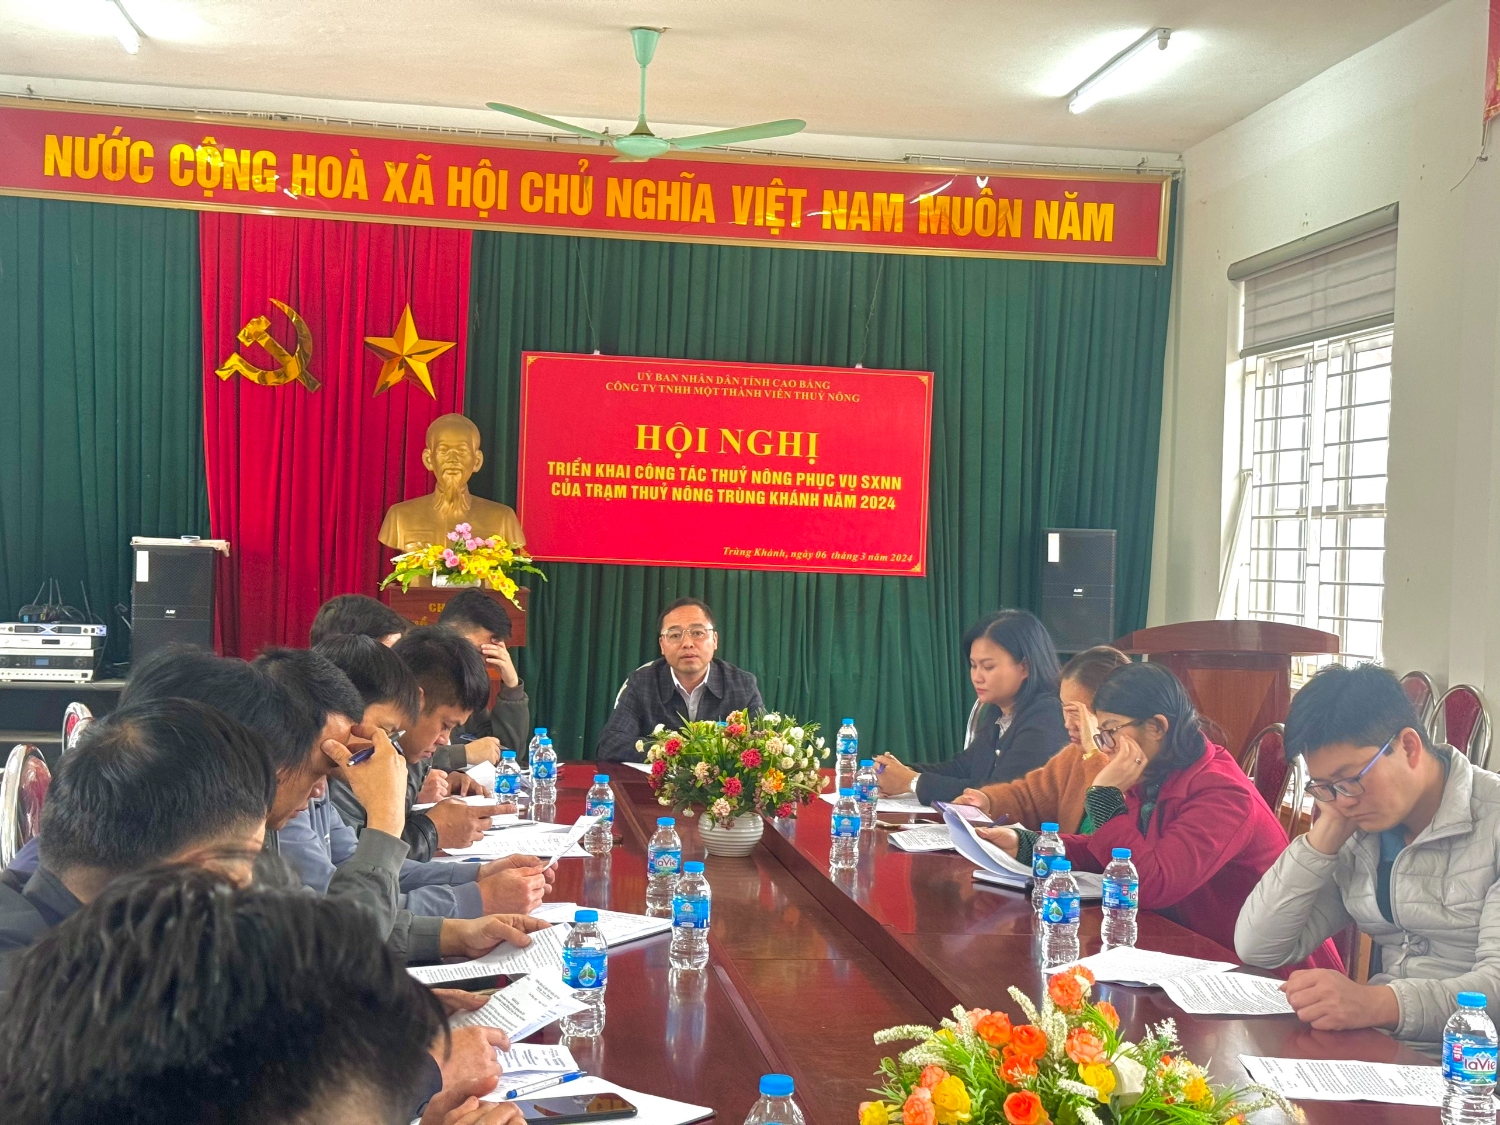 Hội nghị triển khai công tác thủy nông phục vụ sản xuất nông nghiệp của trạm TN Trùng Khánh năm 2024